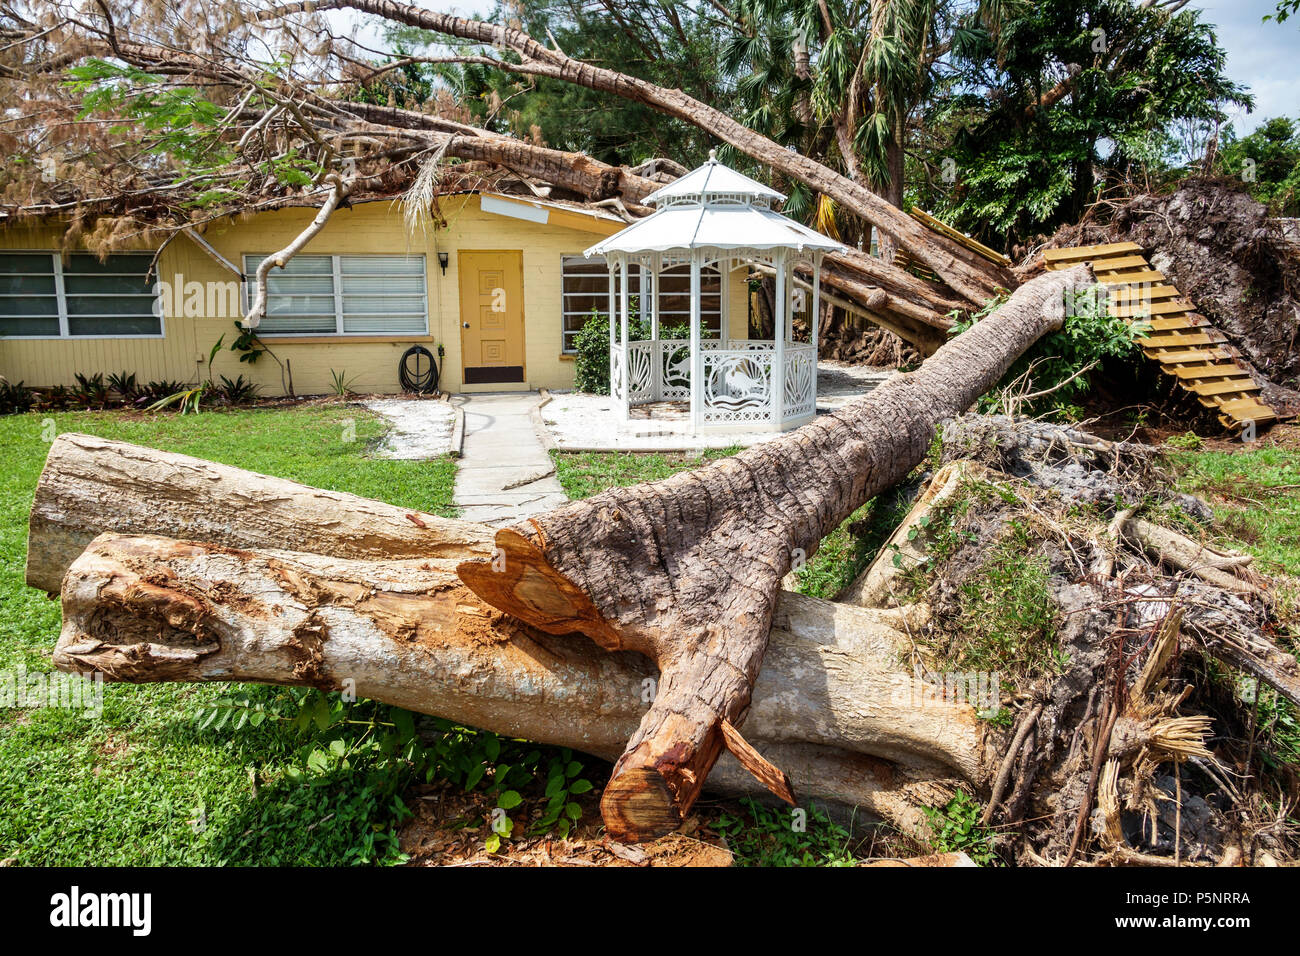 Fort ft. Myers Florida,maison maisons maisons maisons résidence,tempête dégâts destruction séquelles,arbre tombé ouragan Irma,toit endommagé,tronc d'arbre,FL17092 Banque D'Images